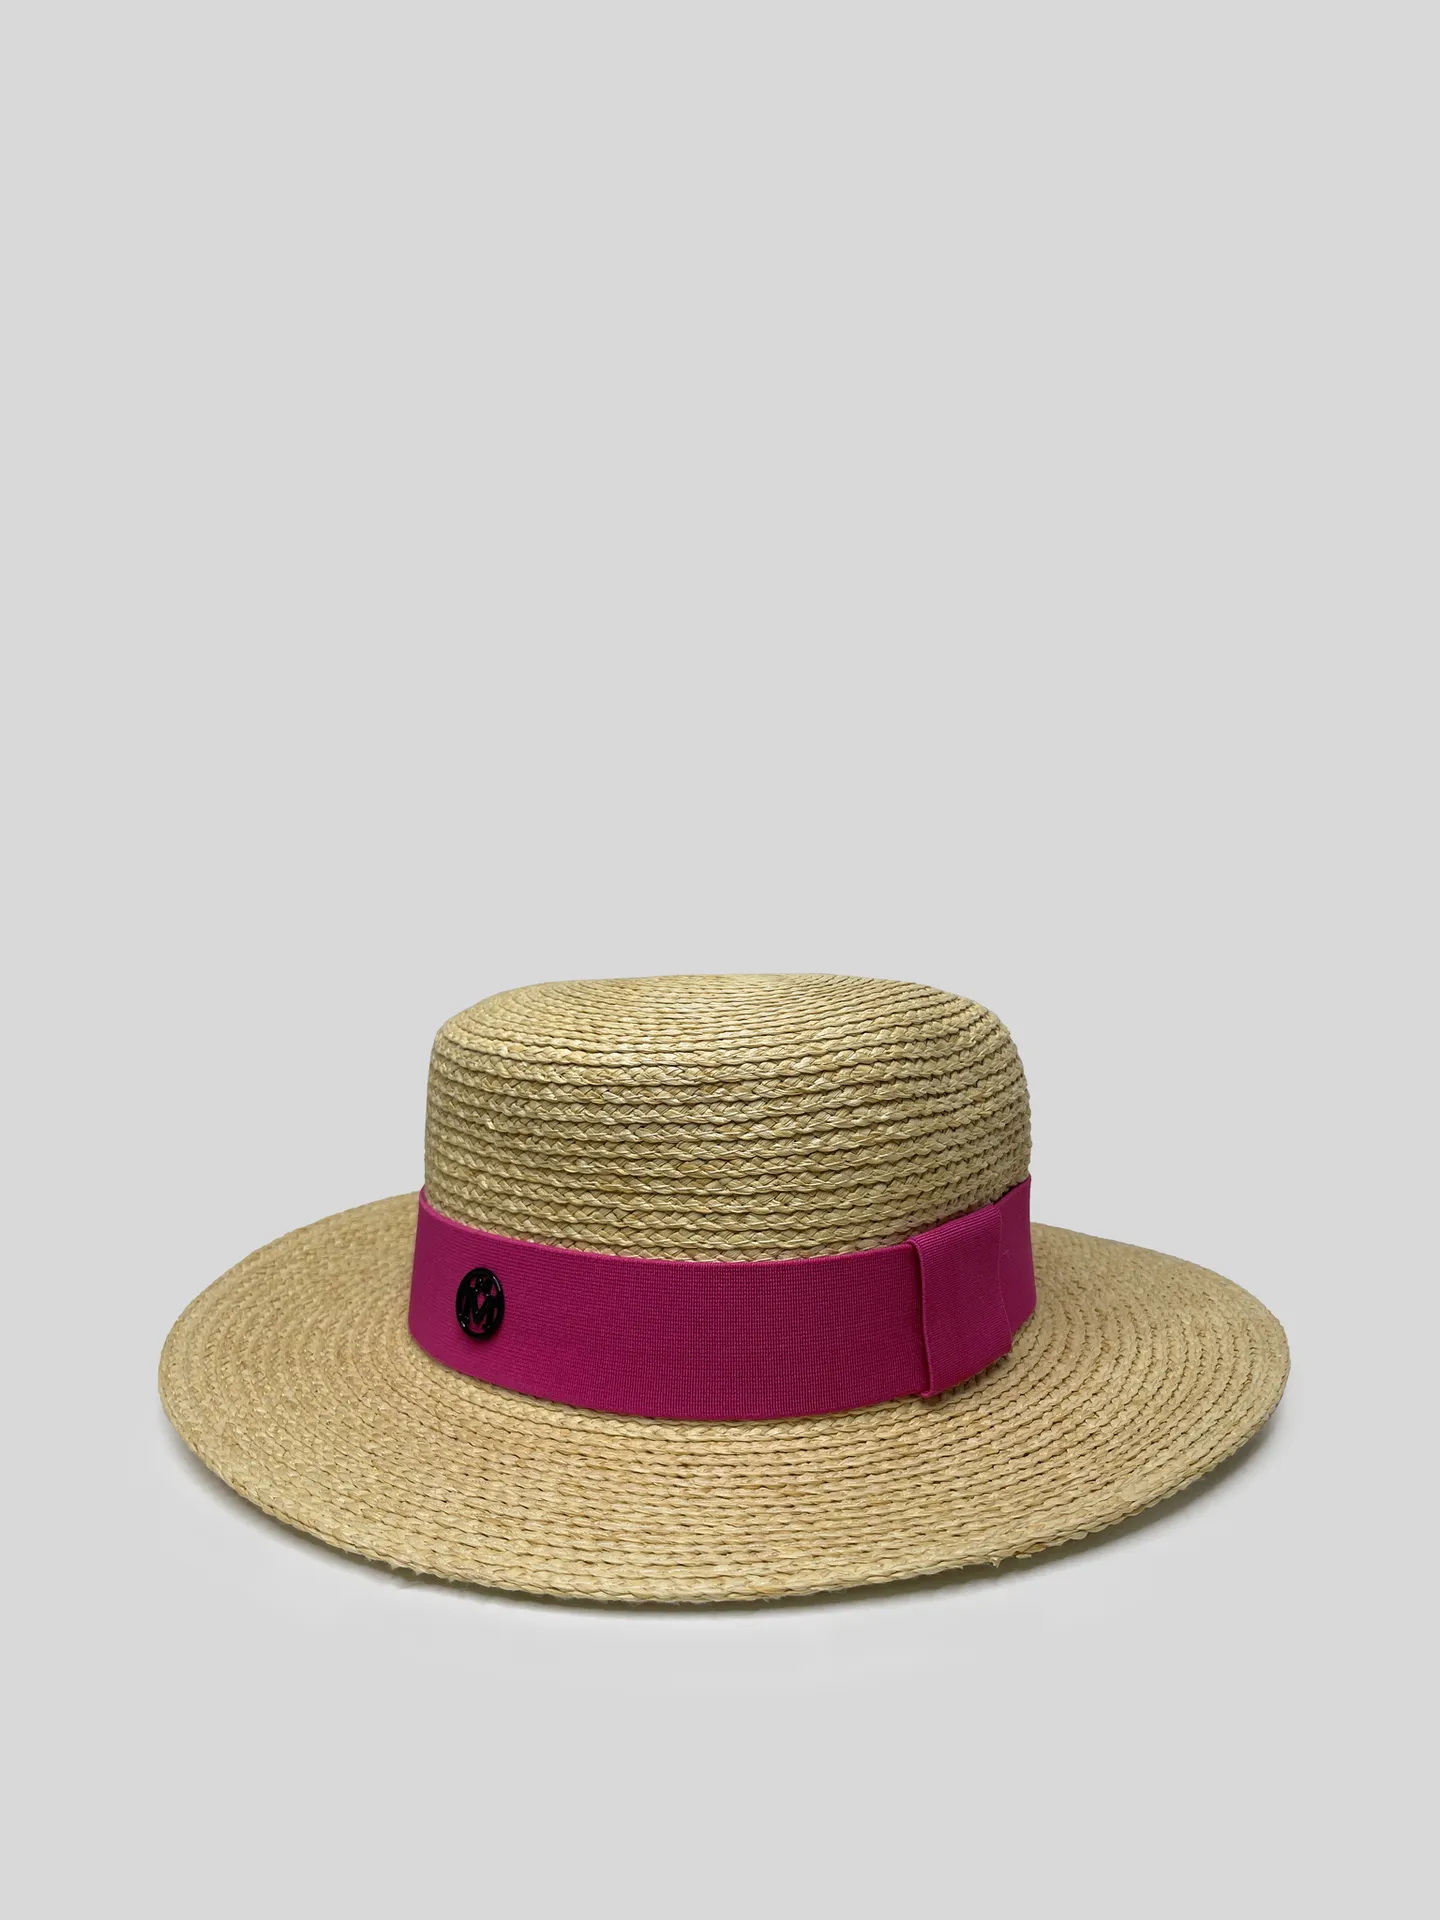 Шляпа соломенная с лентой цвета фуксии и круглой вставкой